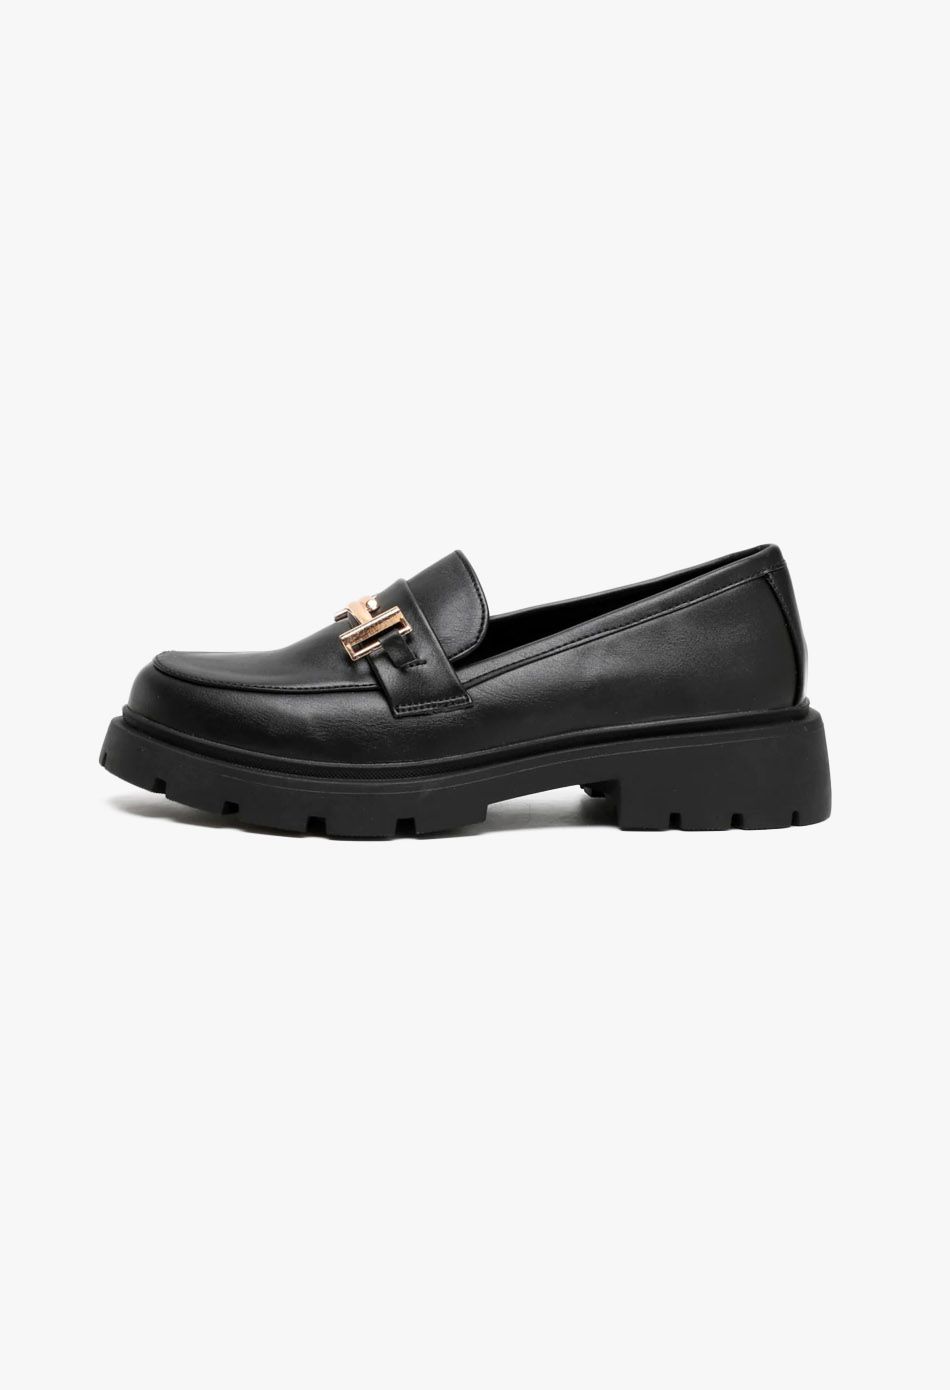 Γυναικεία Loafers σε Μαύρο Χρώμα / 77-431-black Χαμηλά Παπούτσια joya.gr